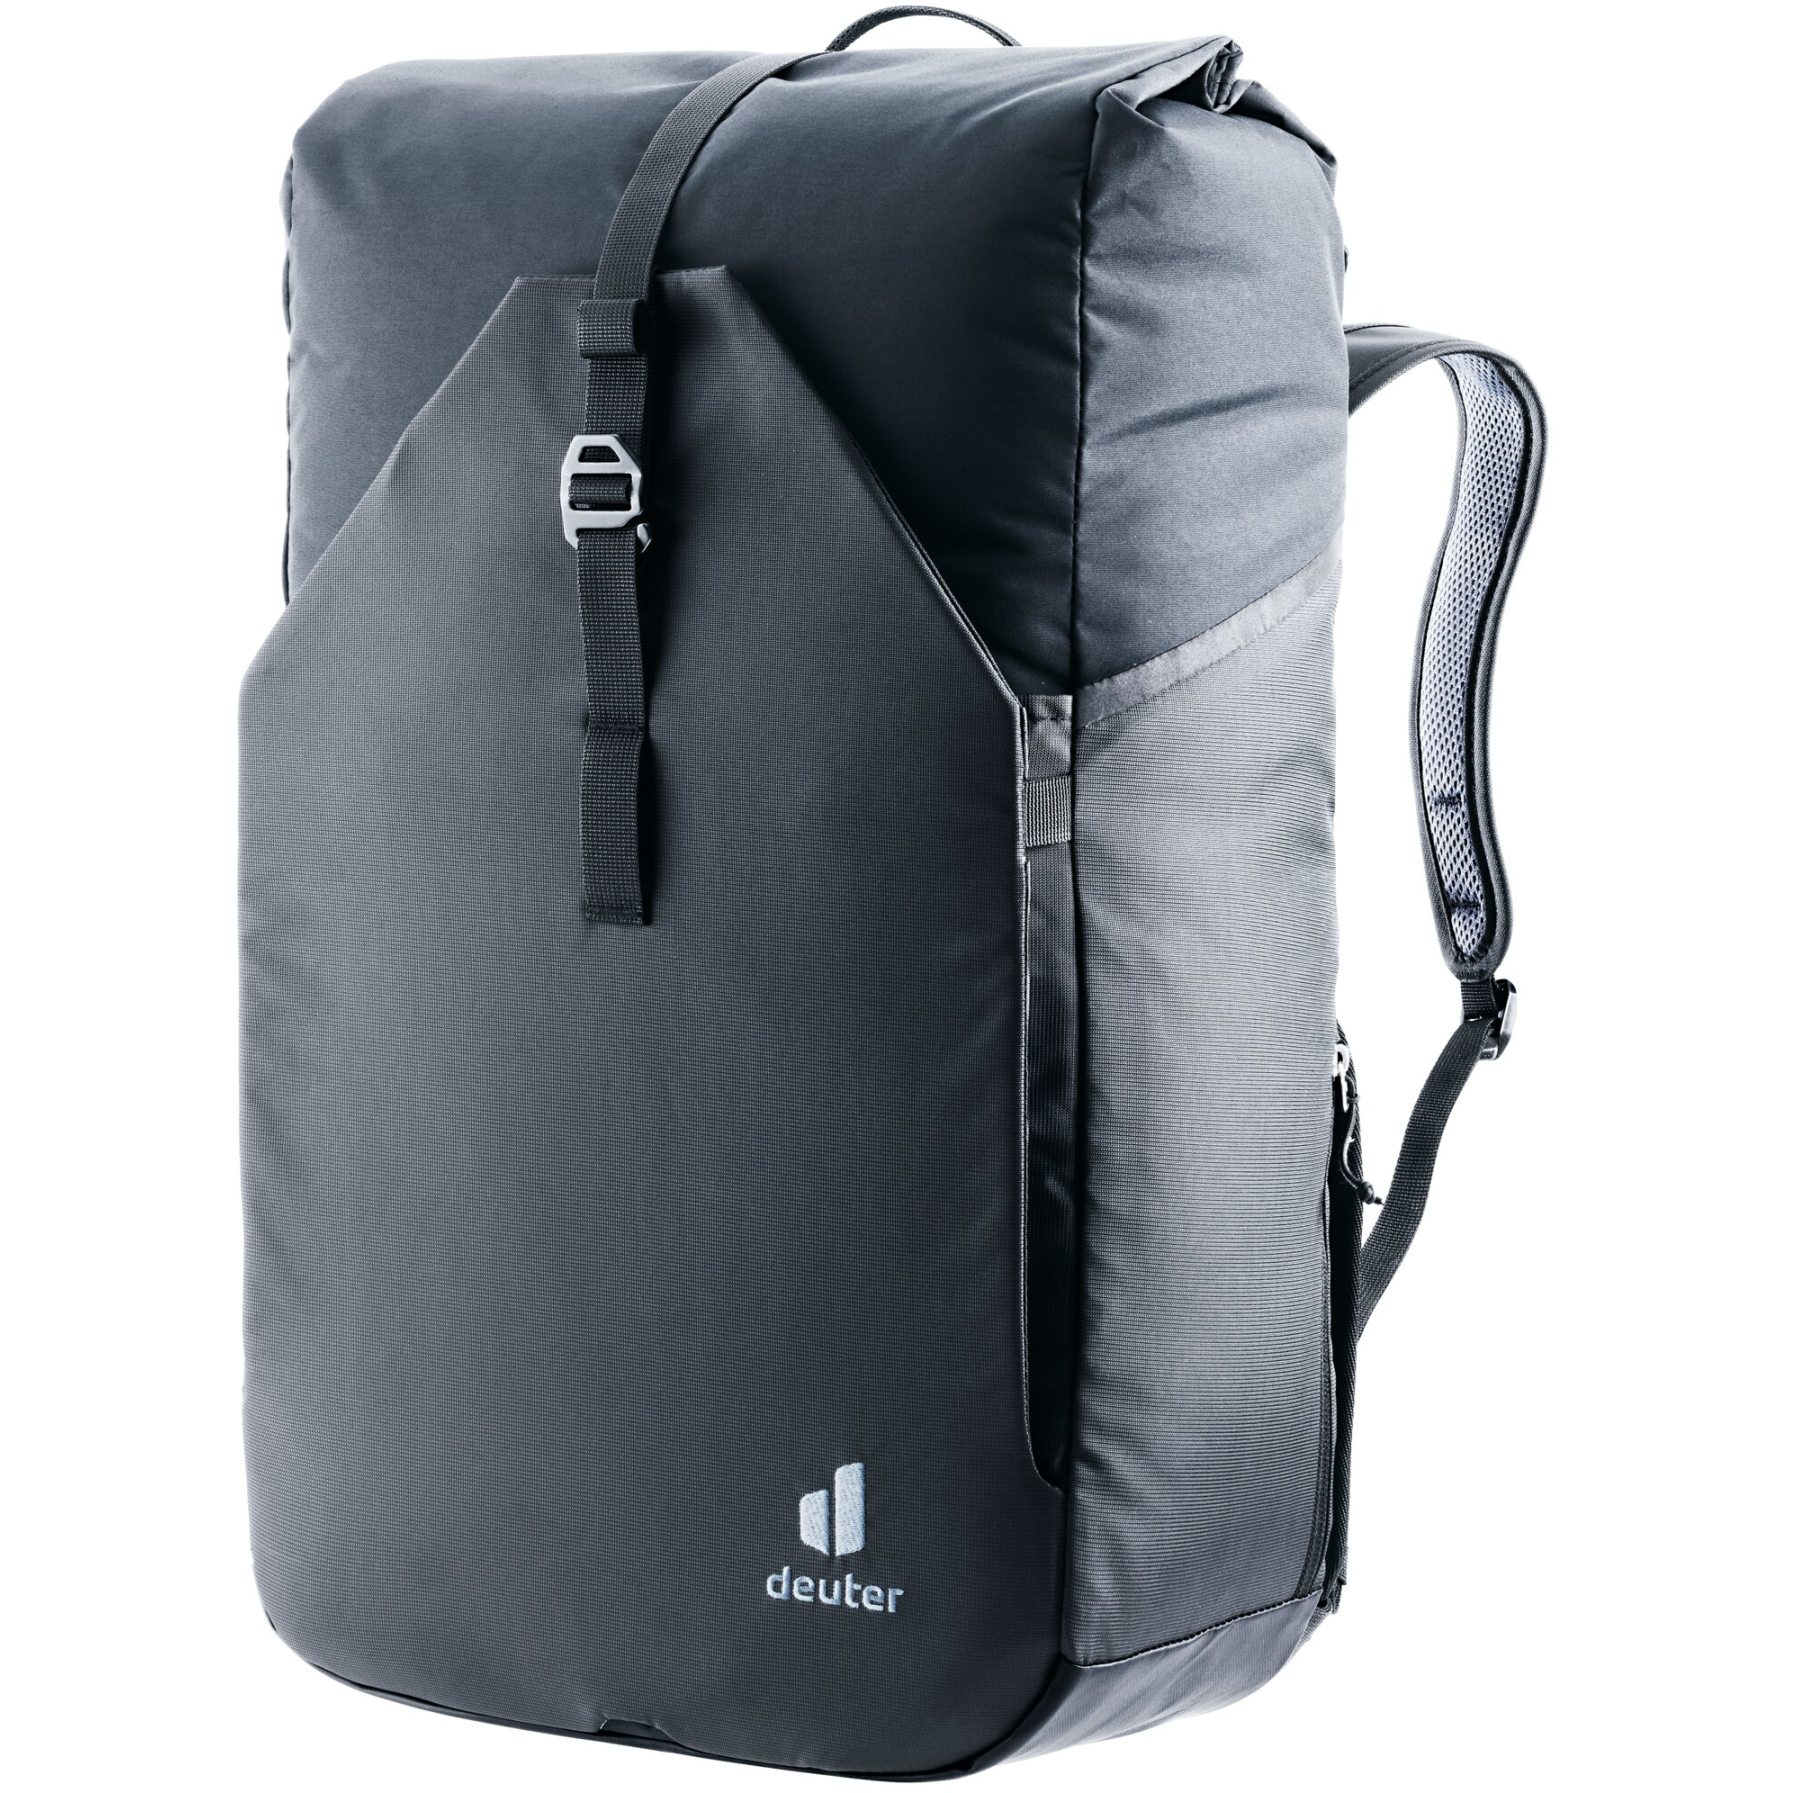 Produktbild von Deuter Xberg 25 Gepäckträgertasche mit Rucksackfunktion - schwarz